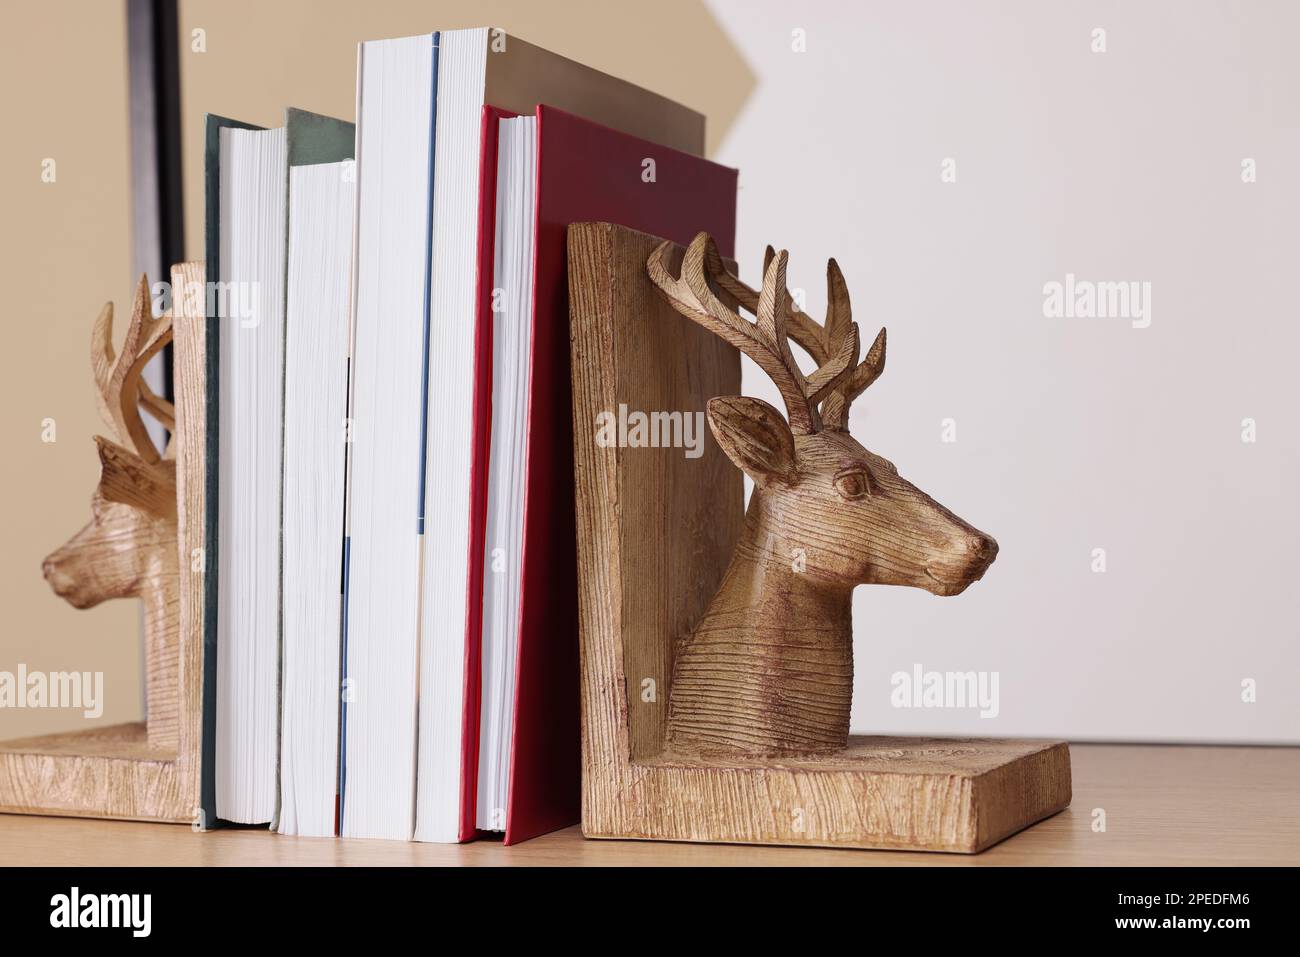 Sujetaleros en forma de ciervo de madera con libros en el estante interior Foto de stock